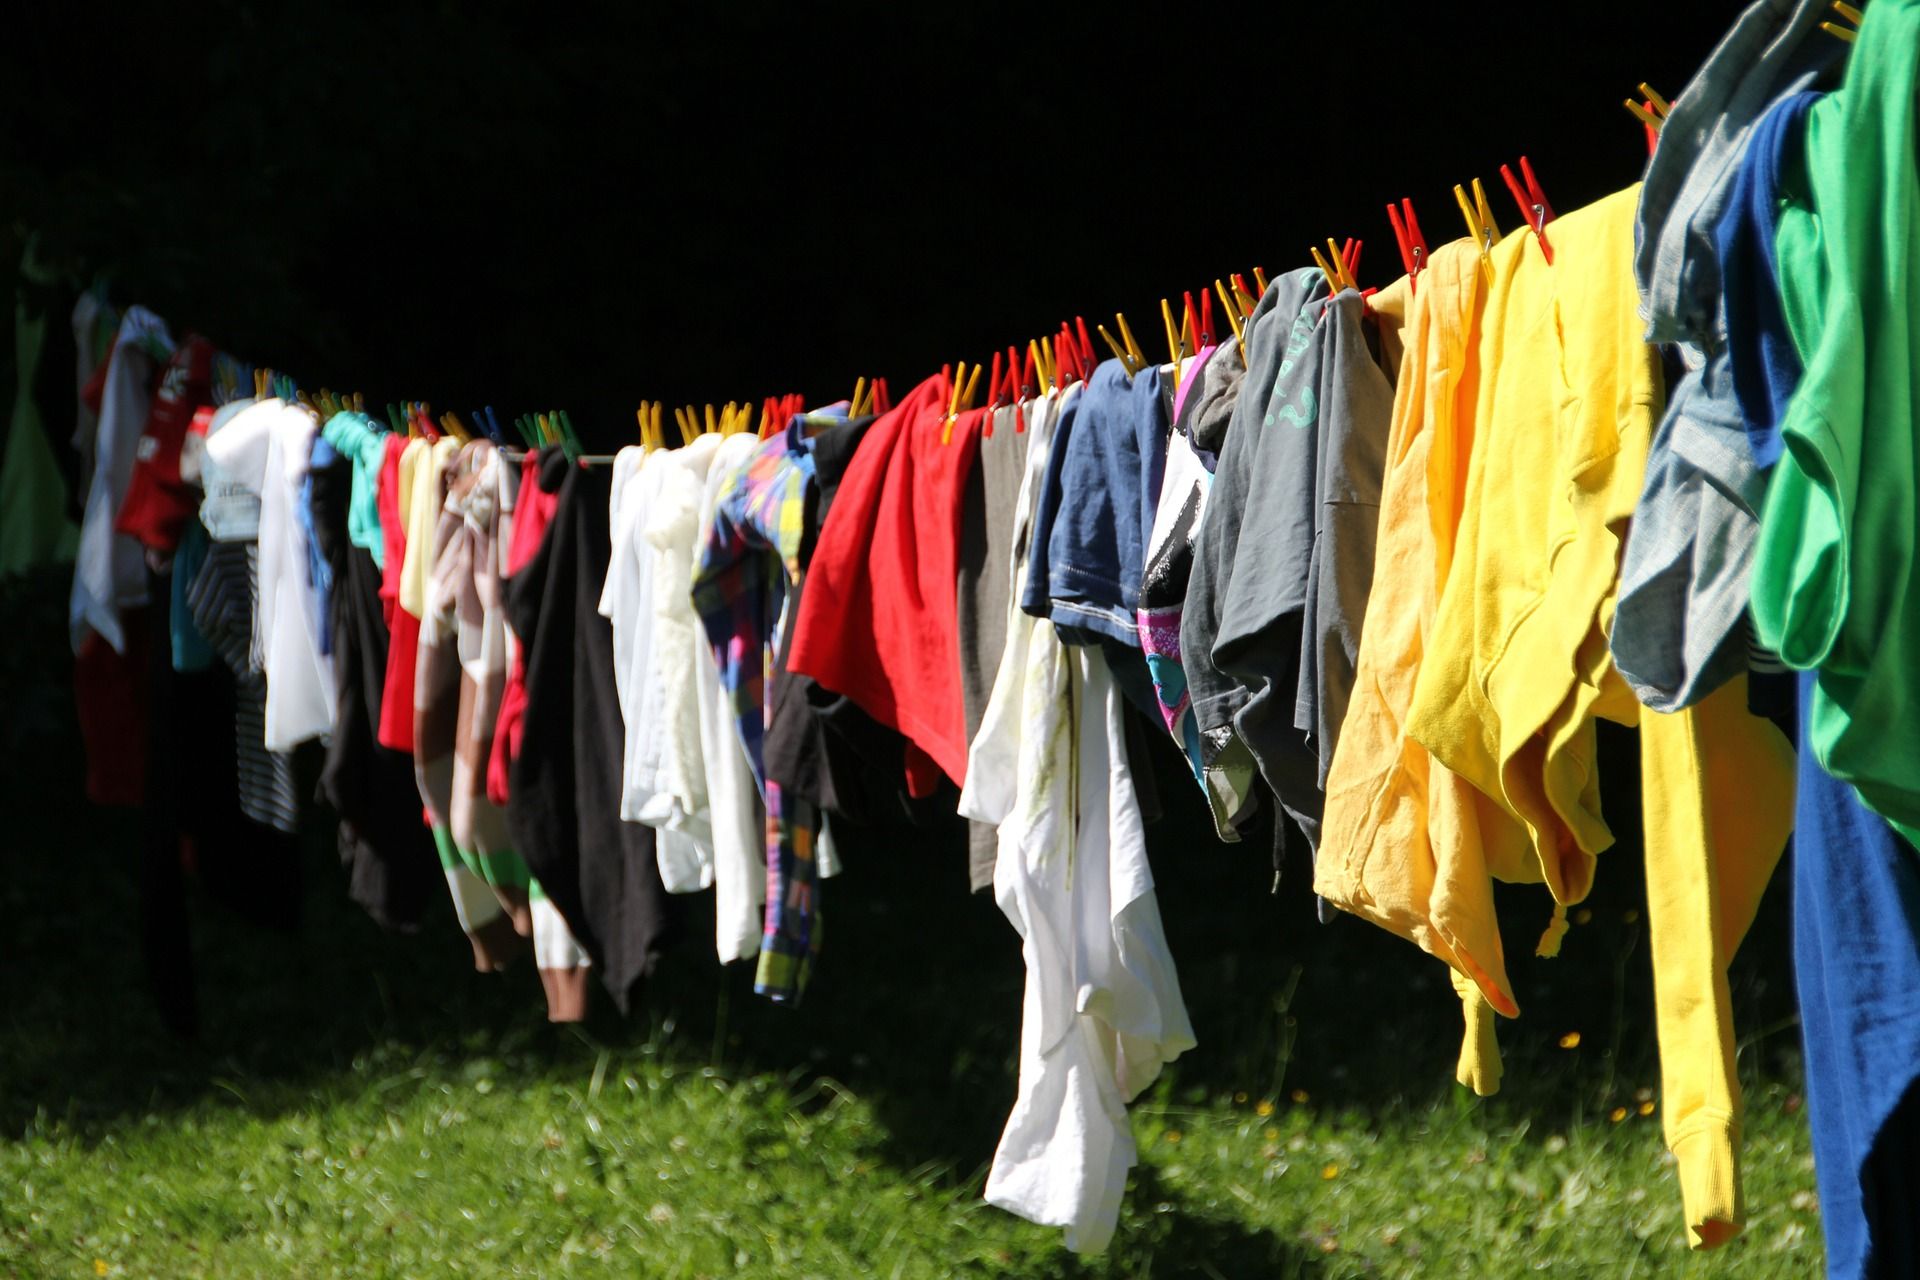 Por qué puede encoger ropa cuando lavas la secas?